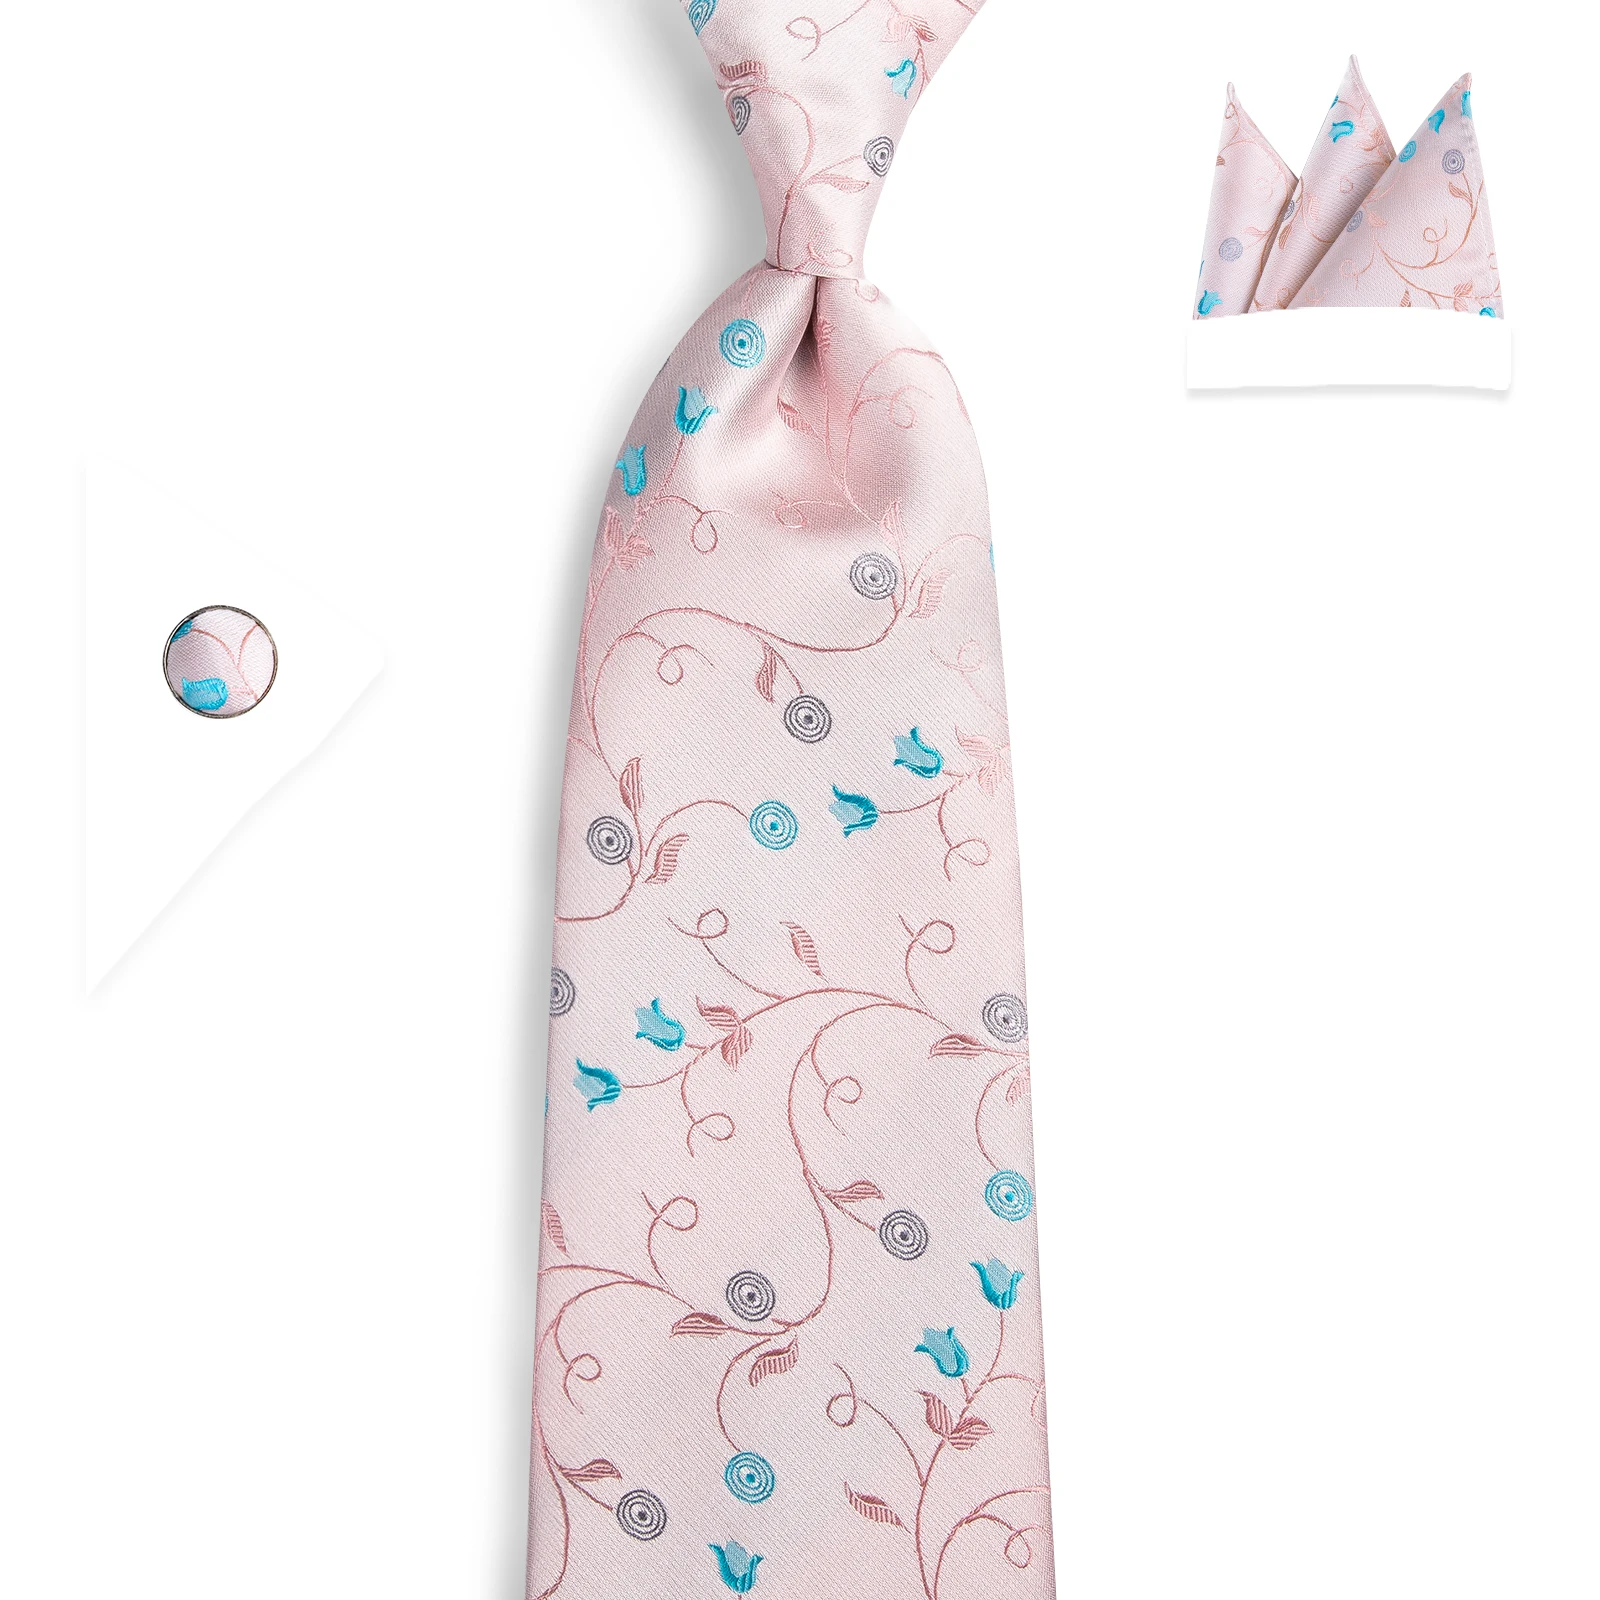 DiBanGu Топ дизайнерский розовый цветочный галстук шелк 160 см галстук носовой платок запонки галстук для мужчин деловой Свадебный галстук набор MJ-7510